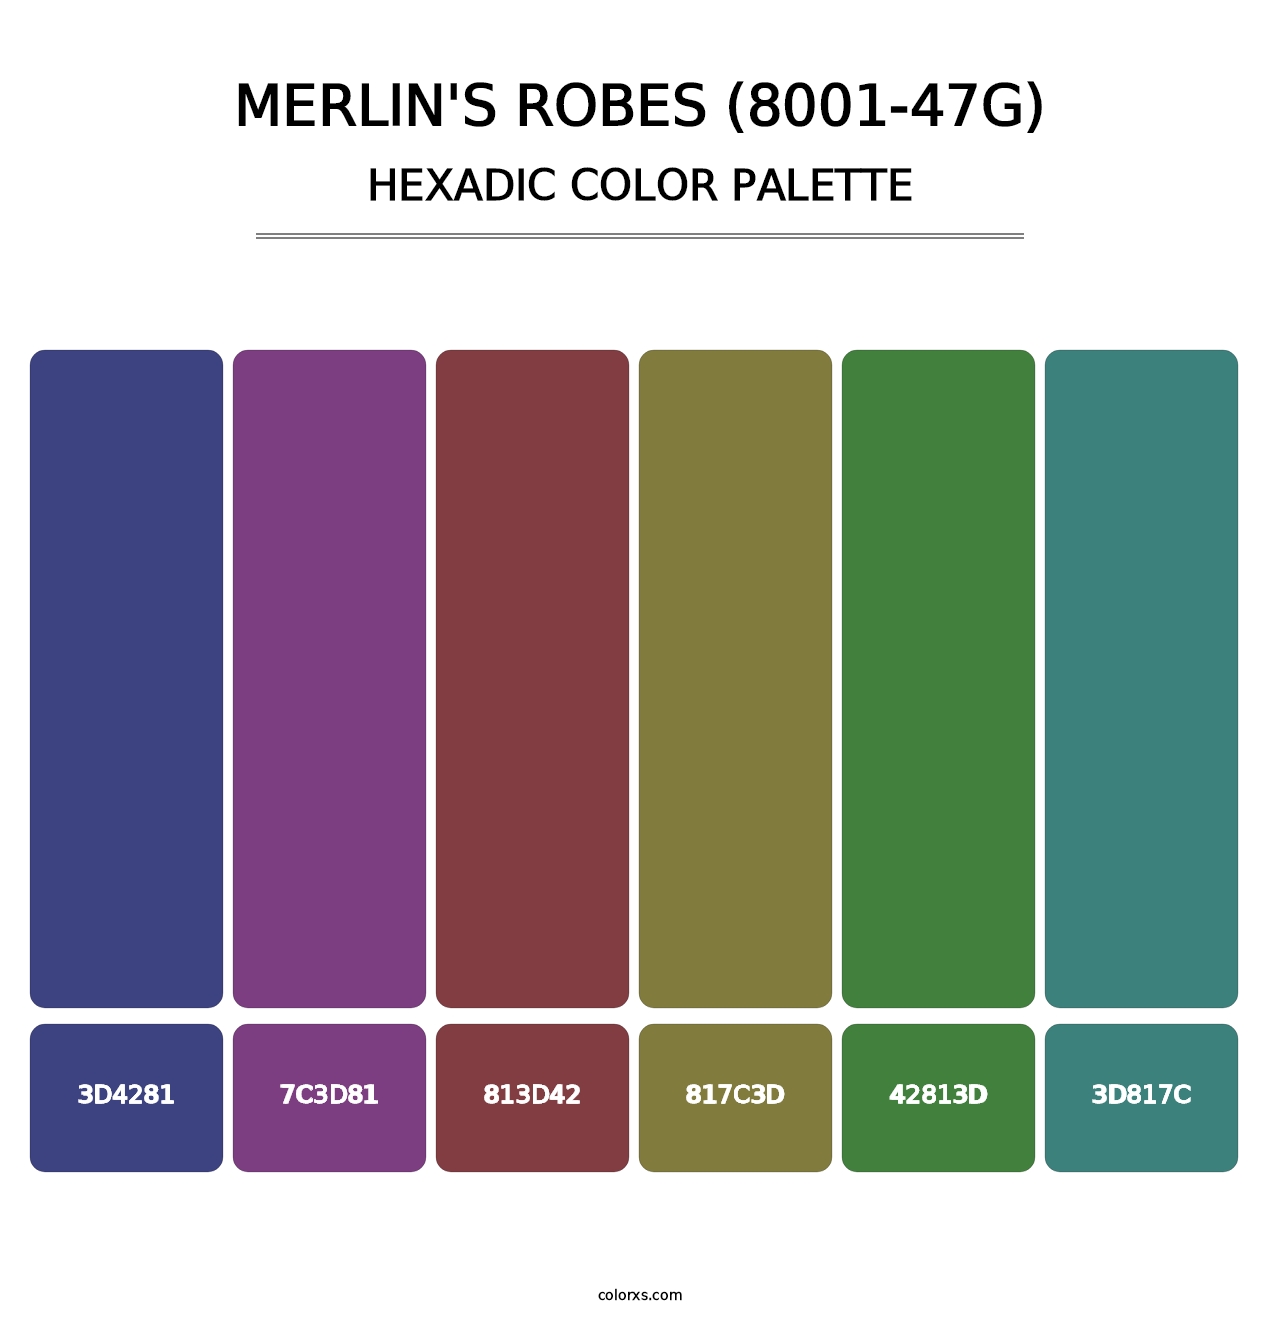 Merlin's Robes (8001-47G) - Hexadic Color Palette